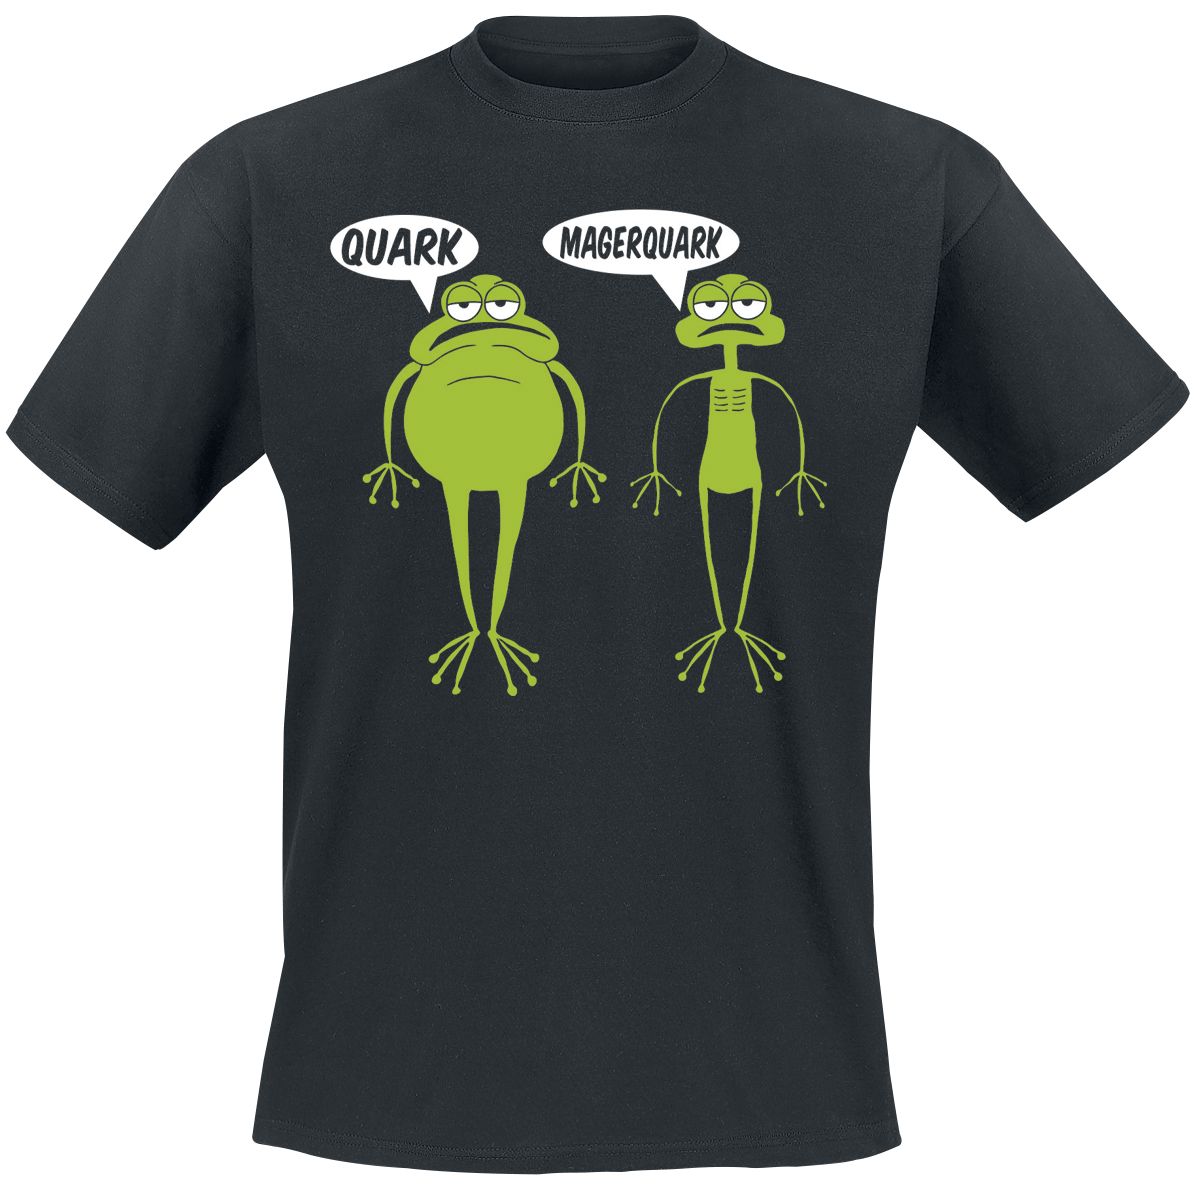 Tierisch - Quark Magerquark - T-Shirt - schwarz